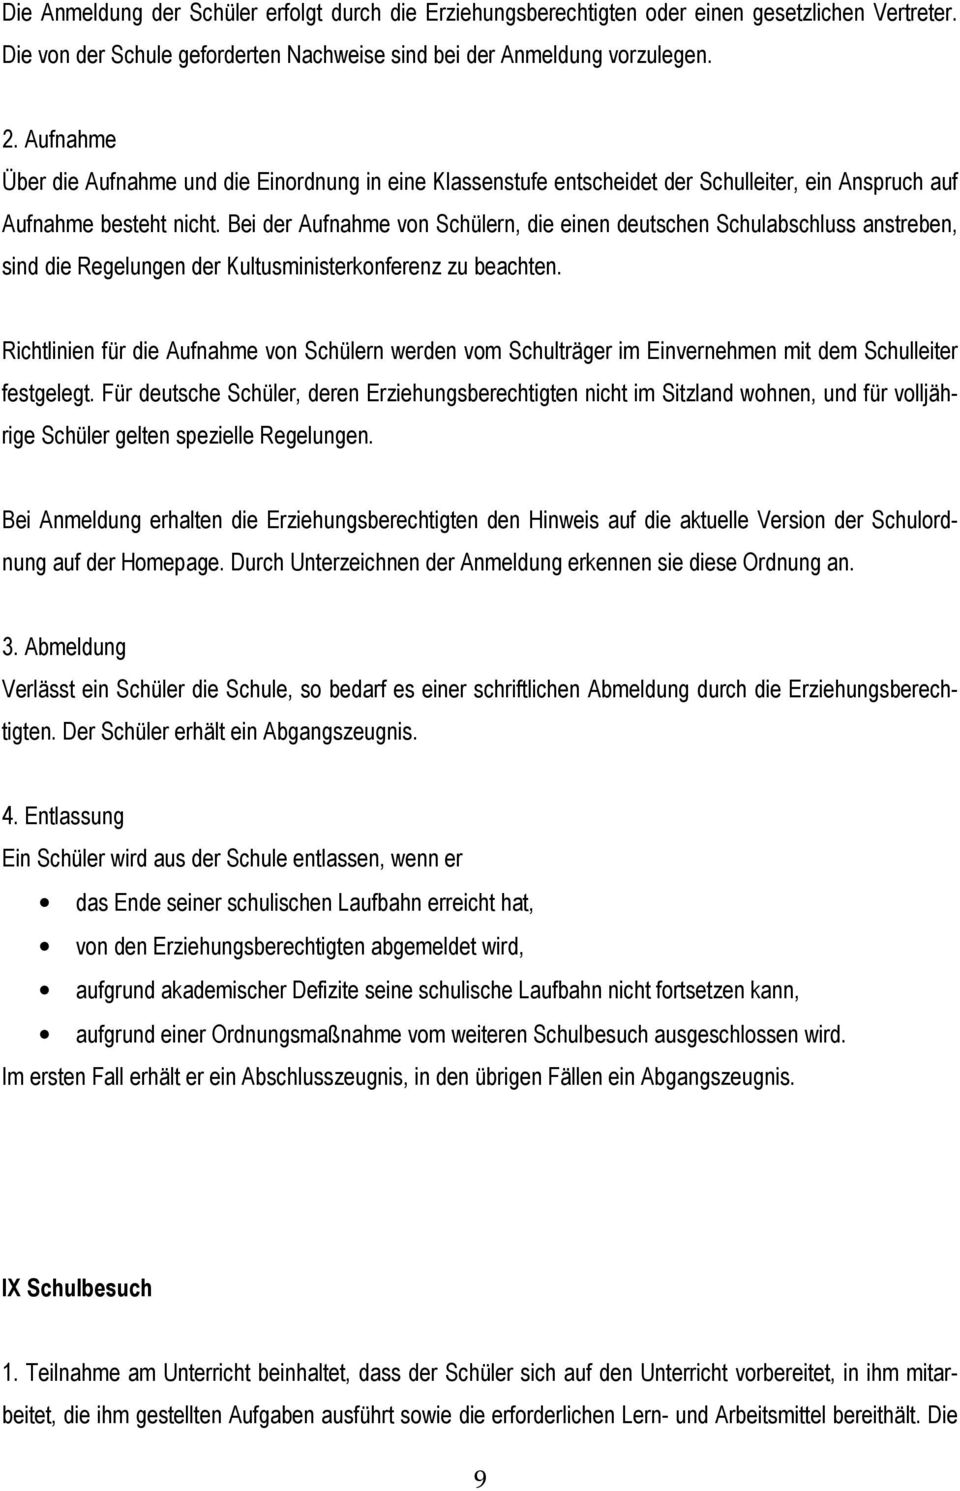 Bei der Aufnahme von Schülern, die einen deutschen Schulabschluss anstreben, sind die Regelungen der Kultusministerkonferenz zu beachten.